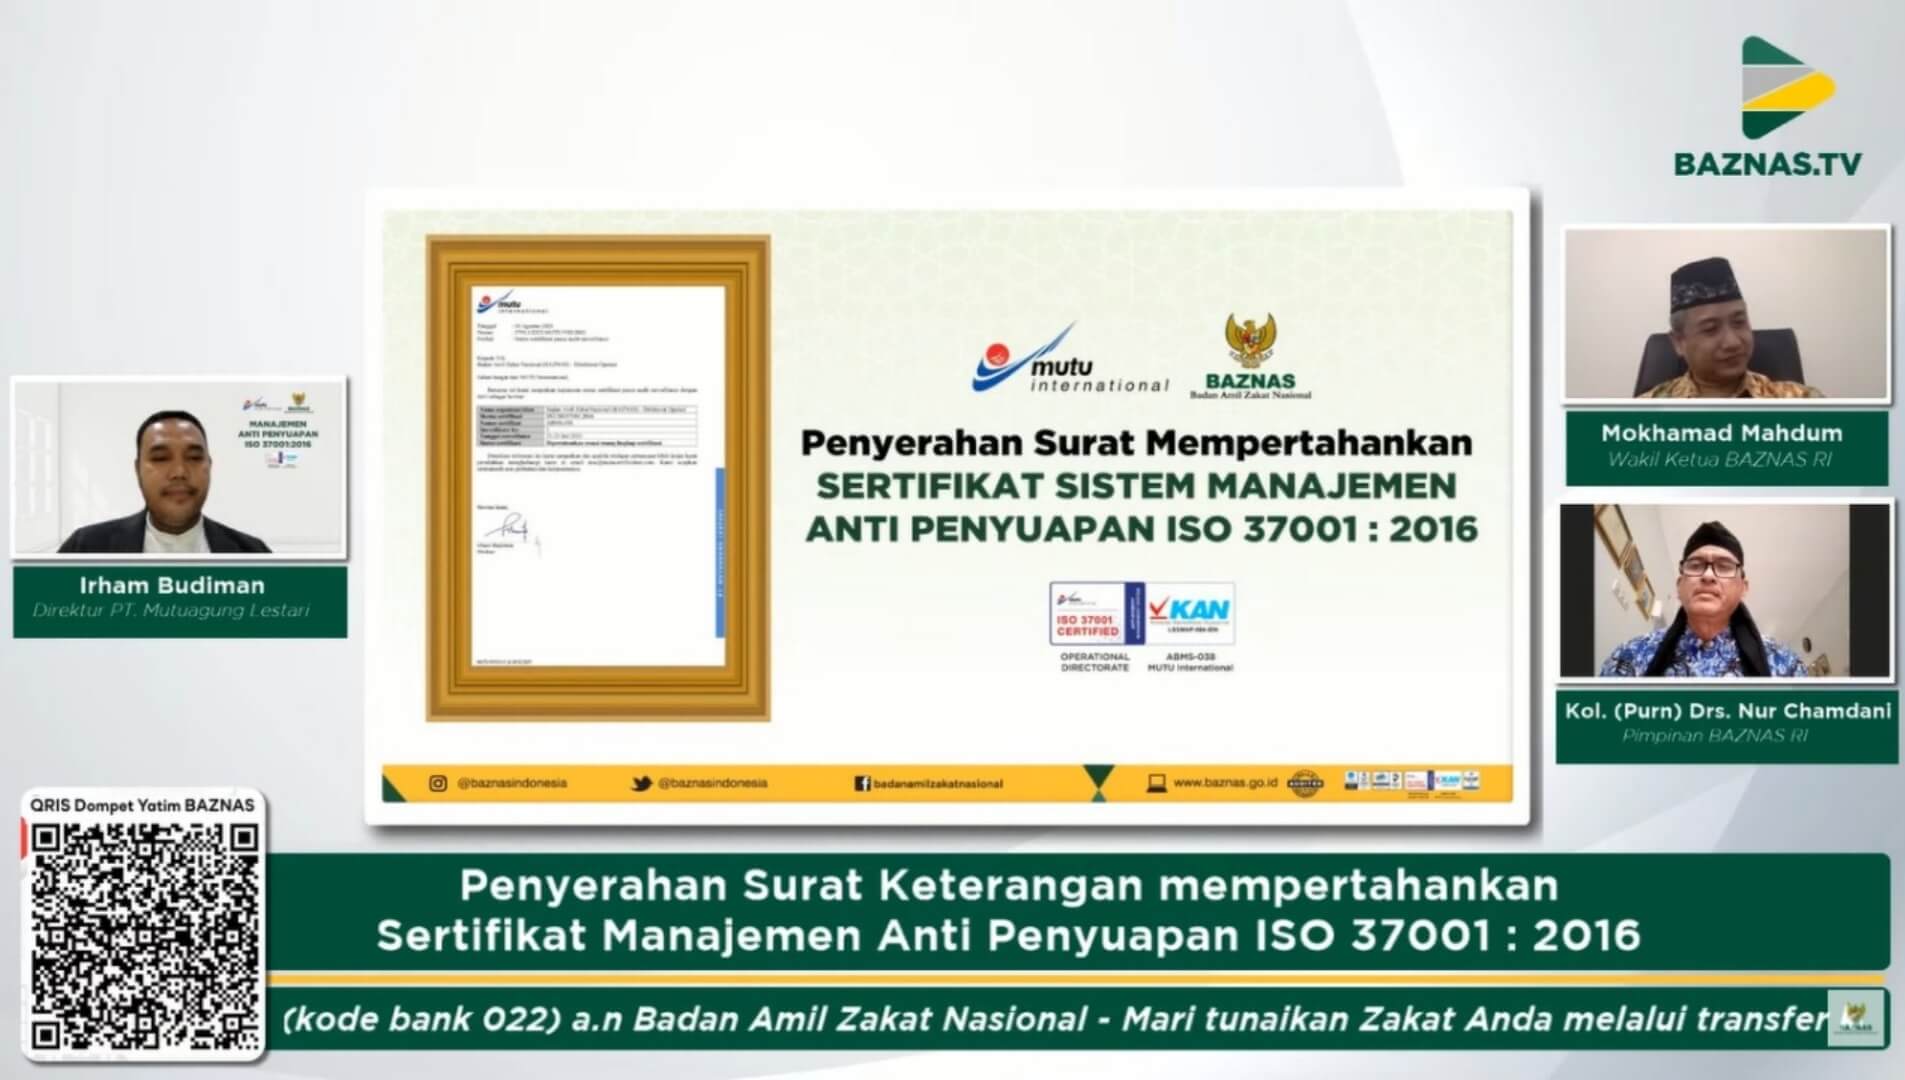 BAZNAS Berhasil Pertahankan Sertifikasi Manajemen Anti Penyuapan SNI ISO 37001:2016